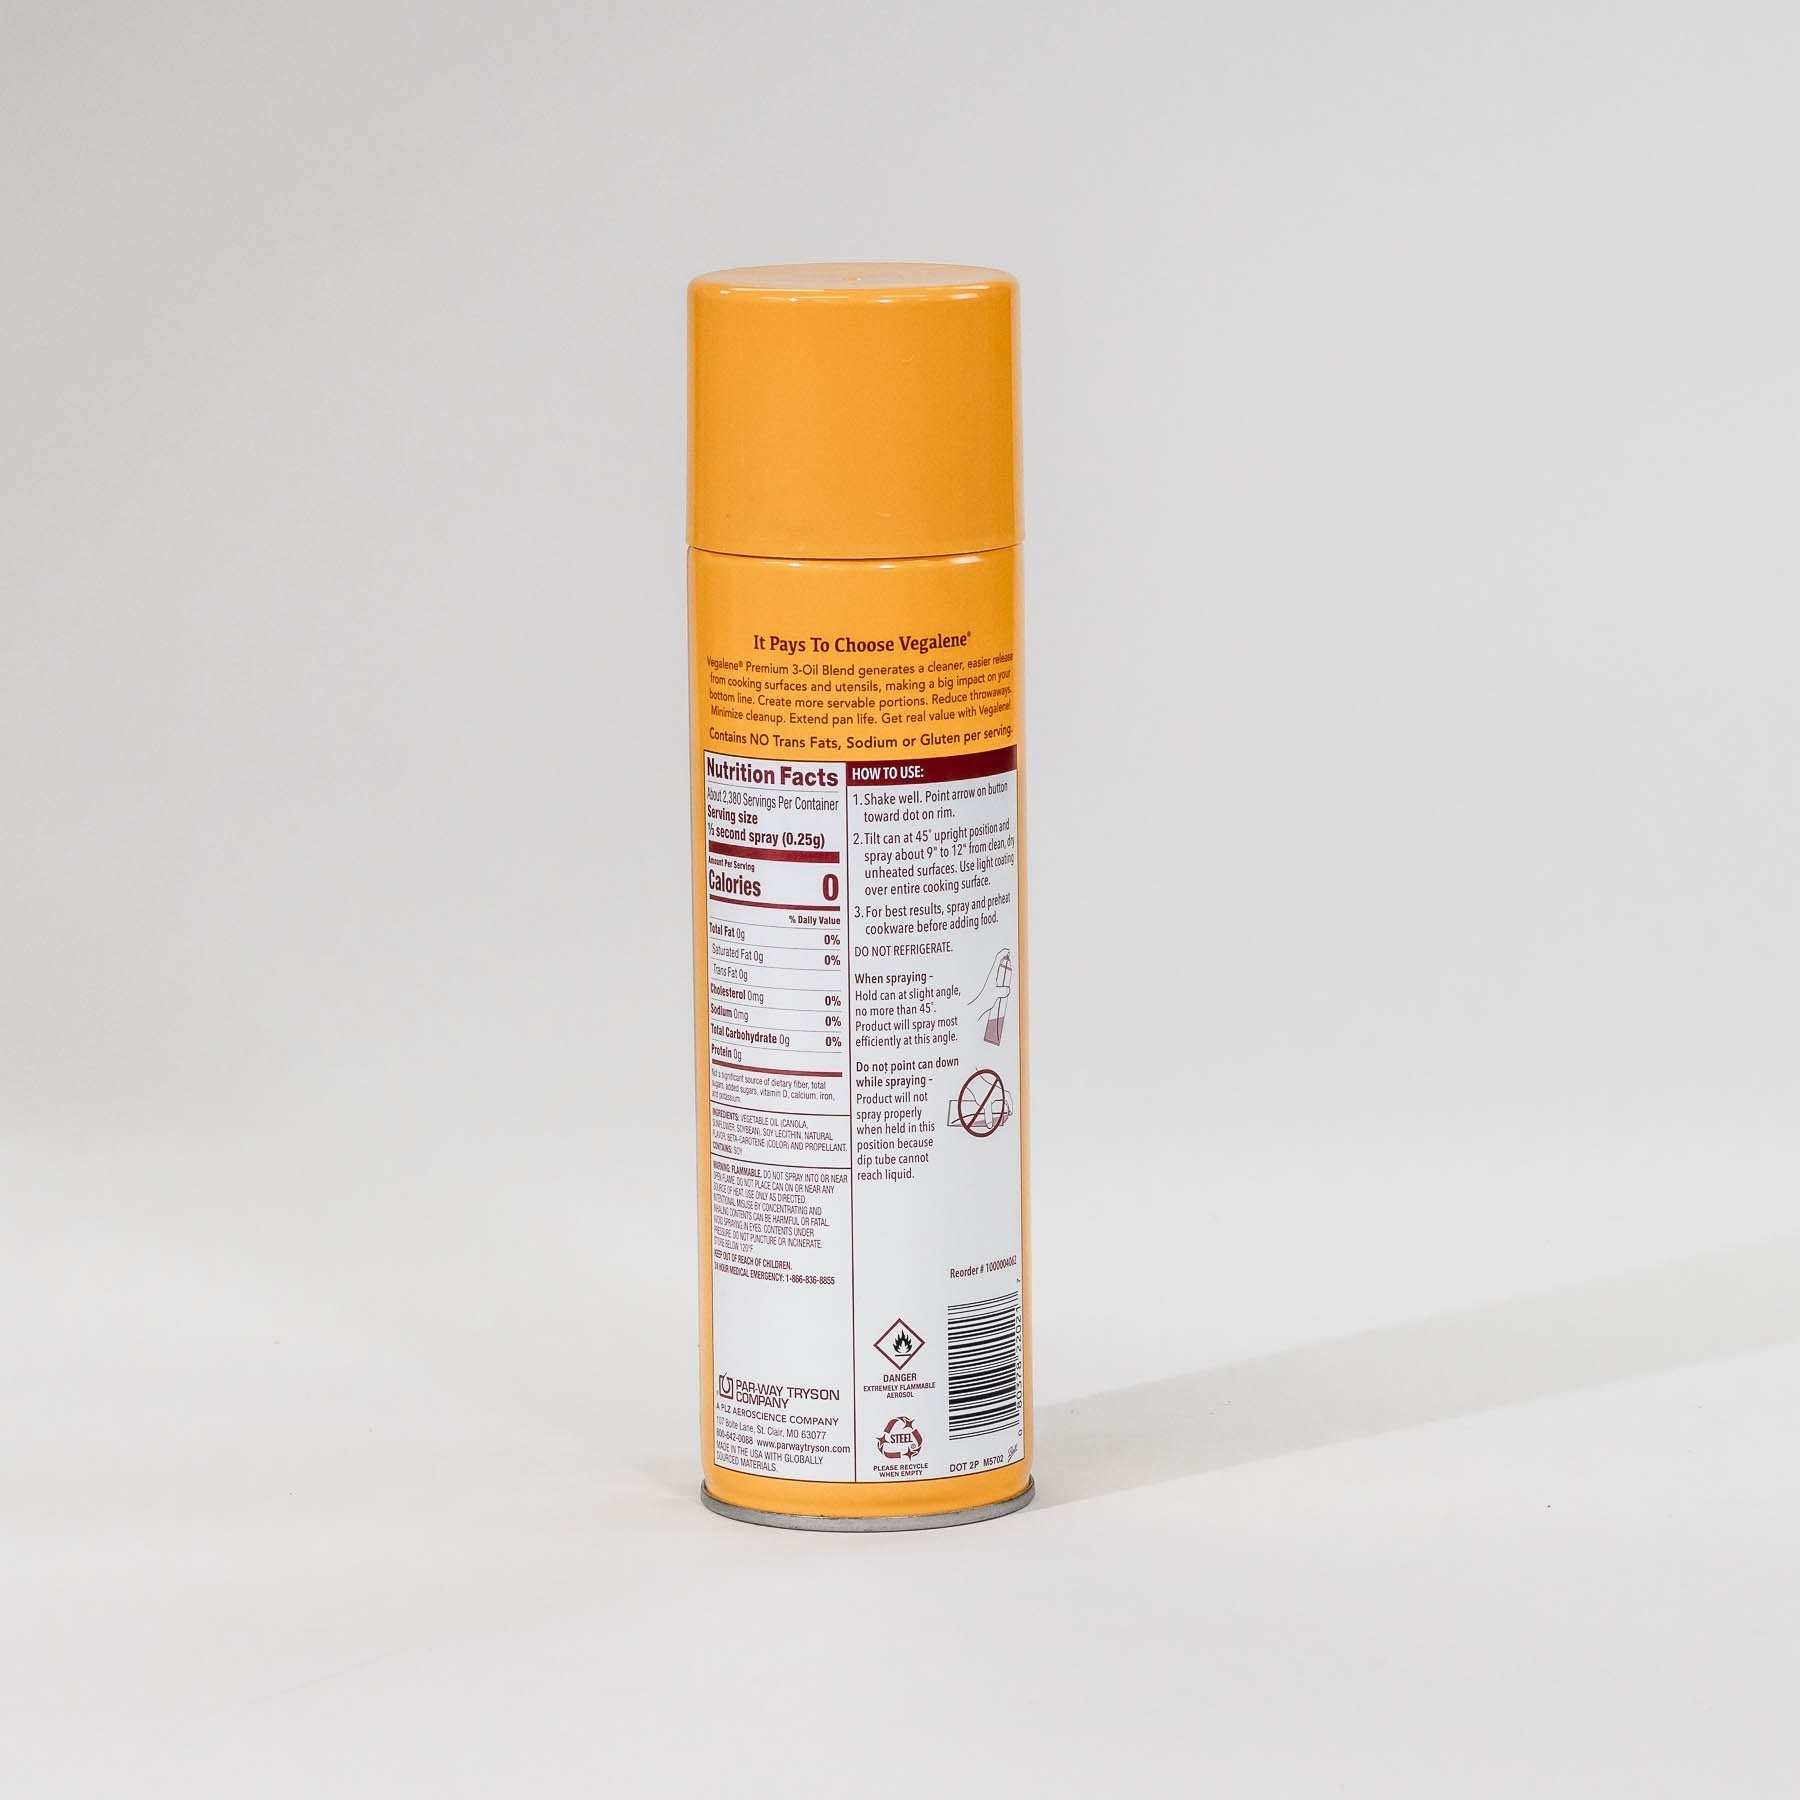 Spray de liberación de alimentos premium - 21 oz - Caja de 6